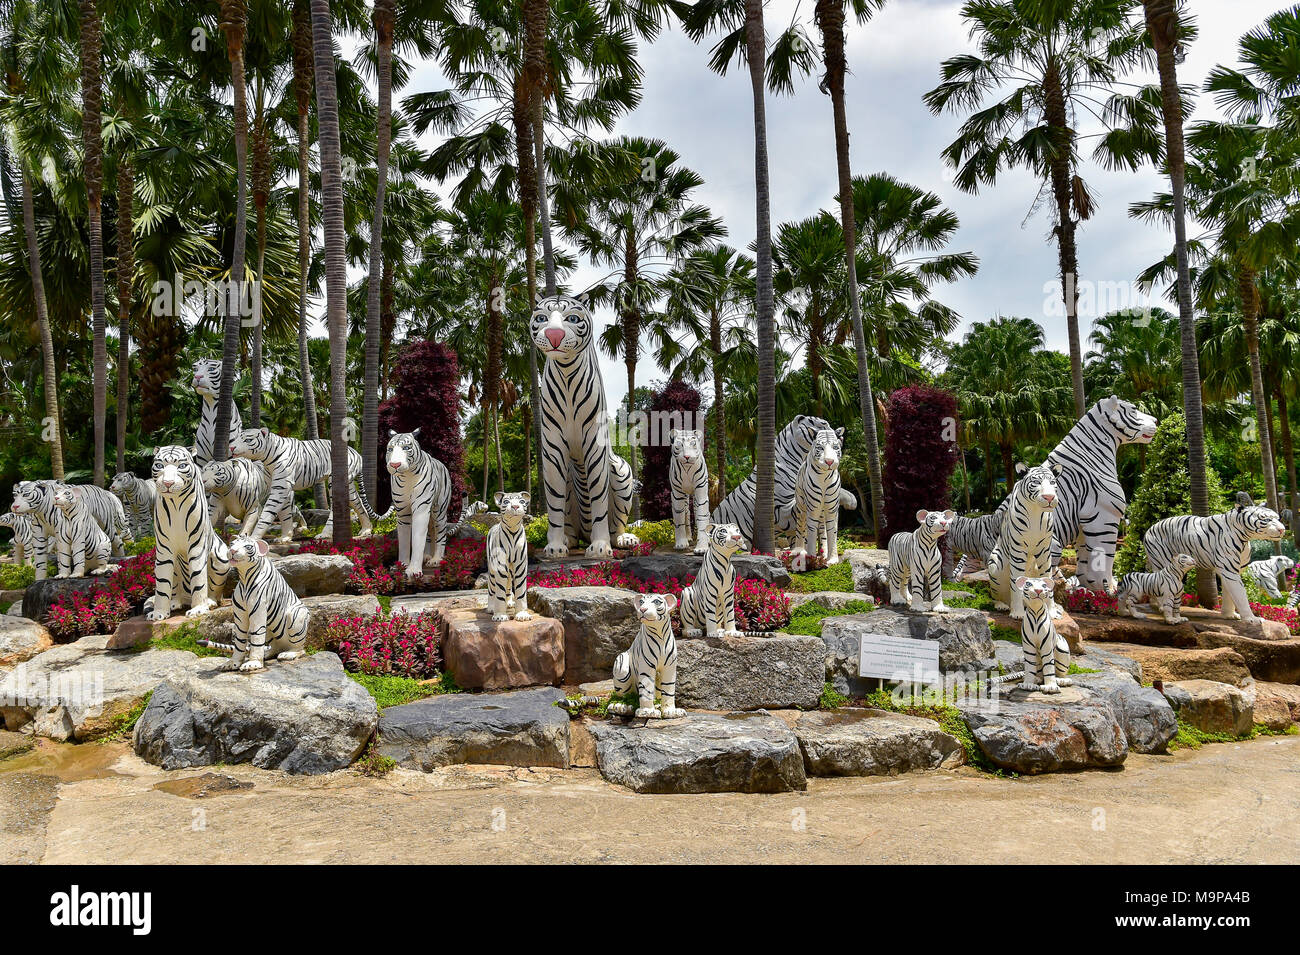 Tigre Blanco cifras, el jardín botánico tropical Nong Nooch, Pattaya, Tailandia Foto de stock